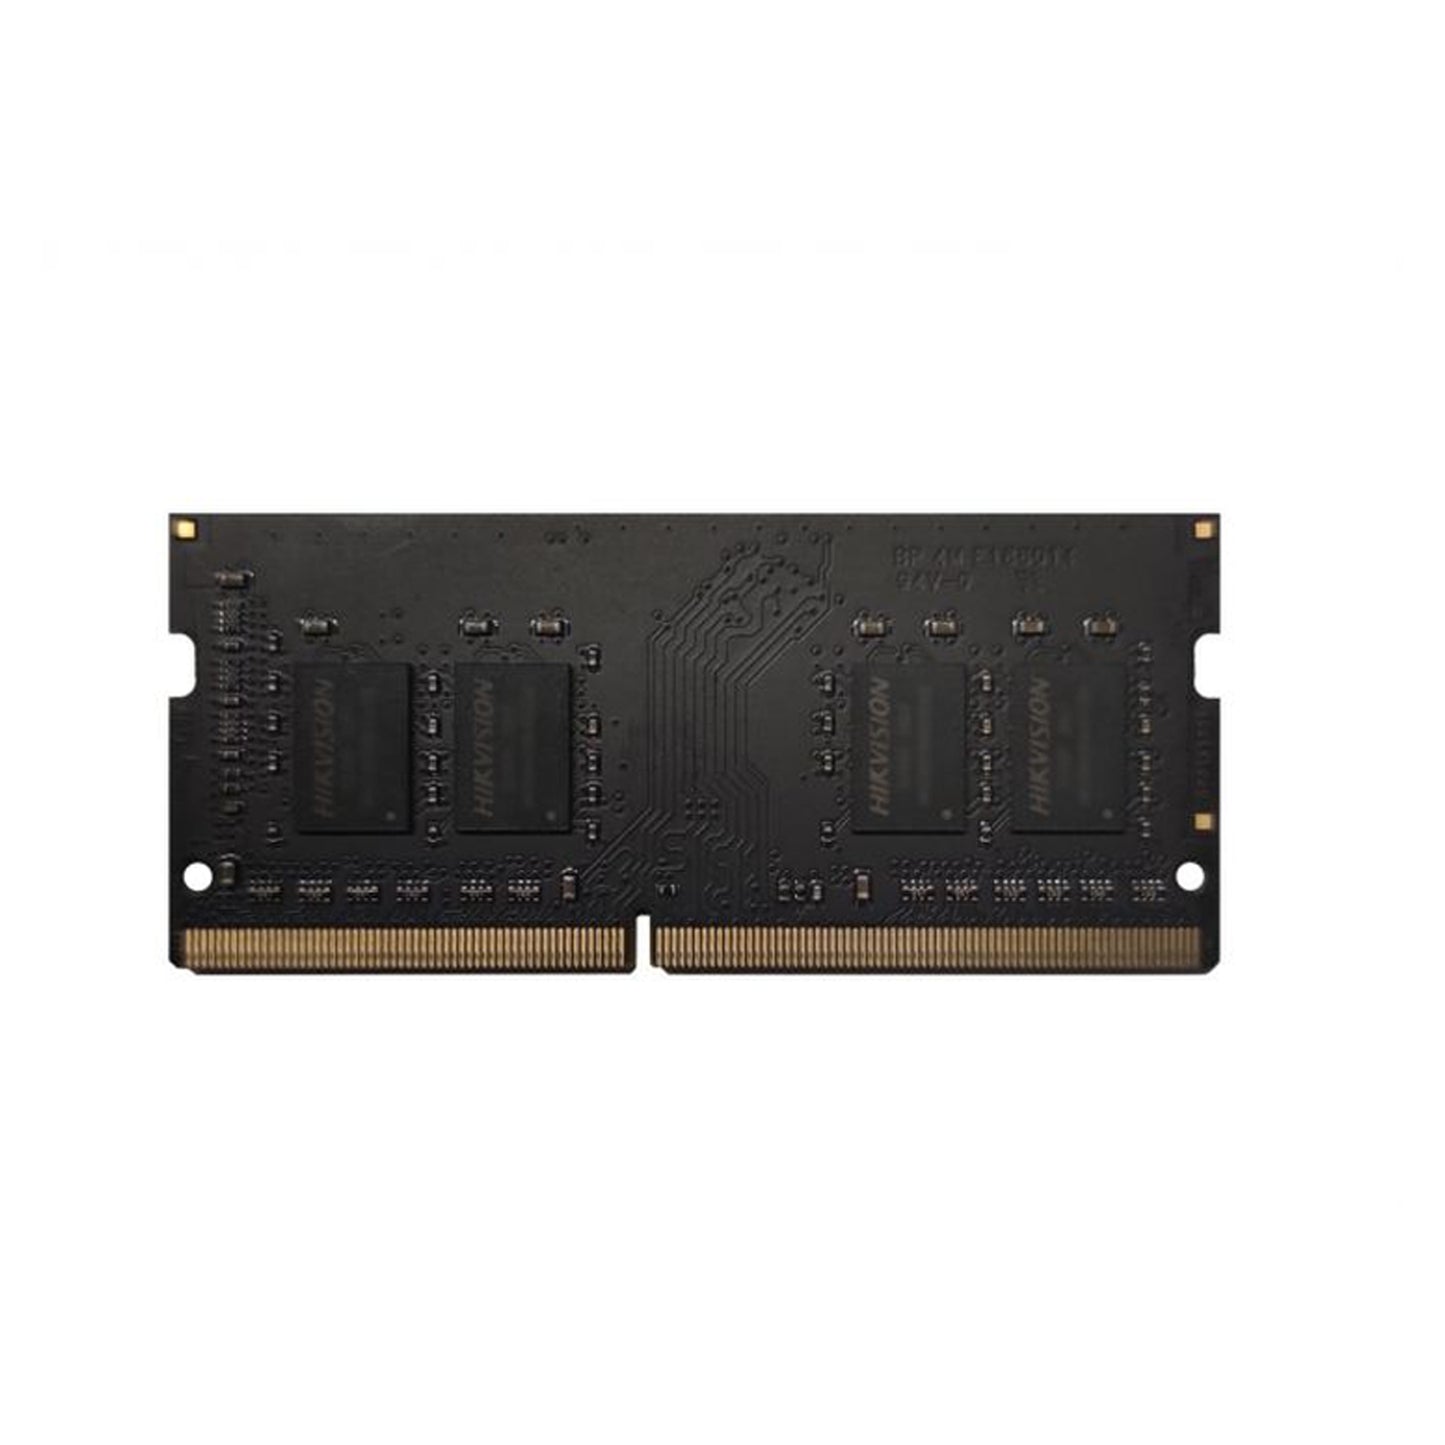 Memoria Ram DDR4 2666 MHZ 8GB HKED4082CBA1D0ZA1 Hikvision